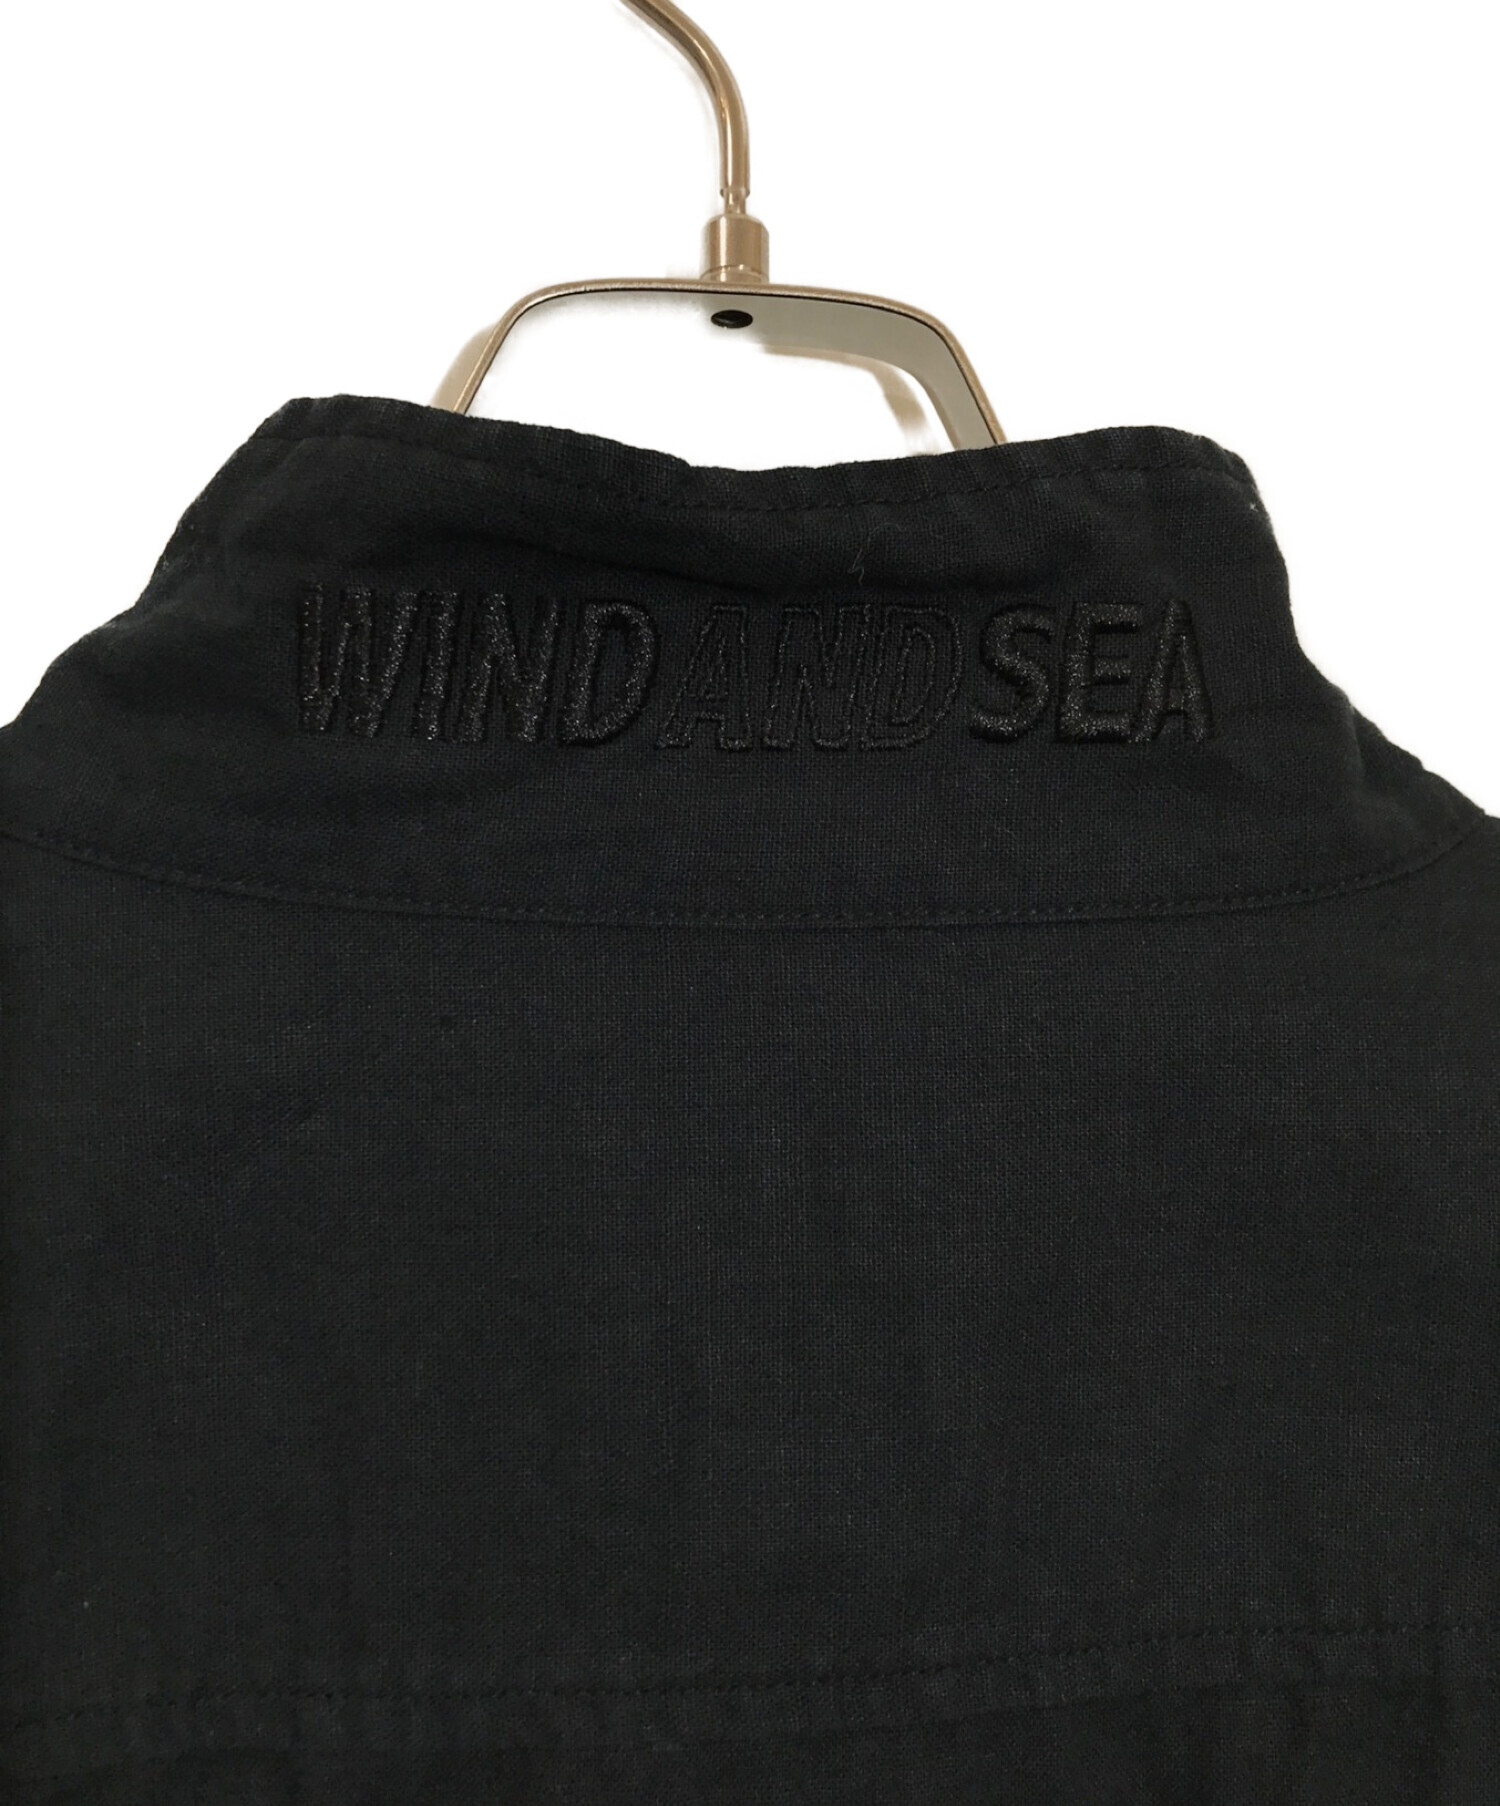 WIND AND SEA × MANASTASH JACKET size:L - ナイロンジャケット